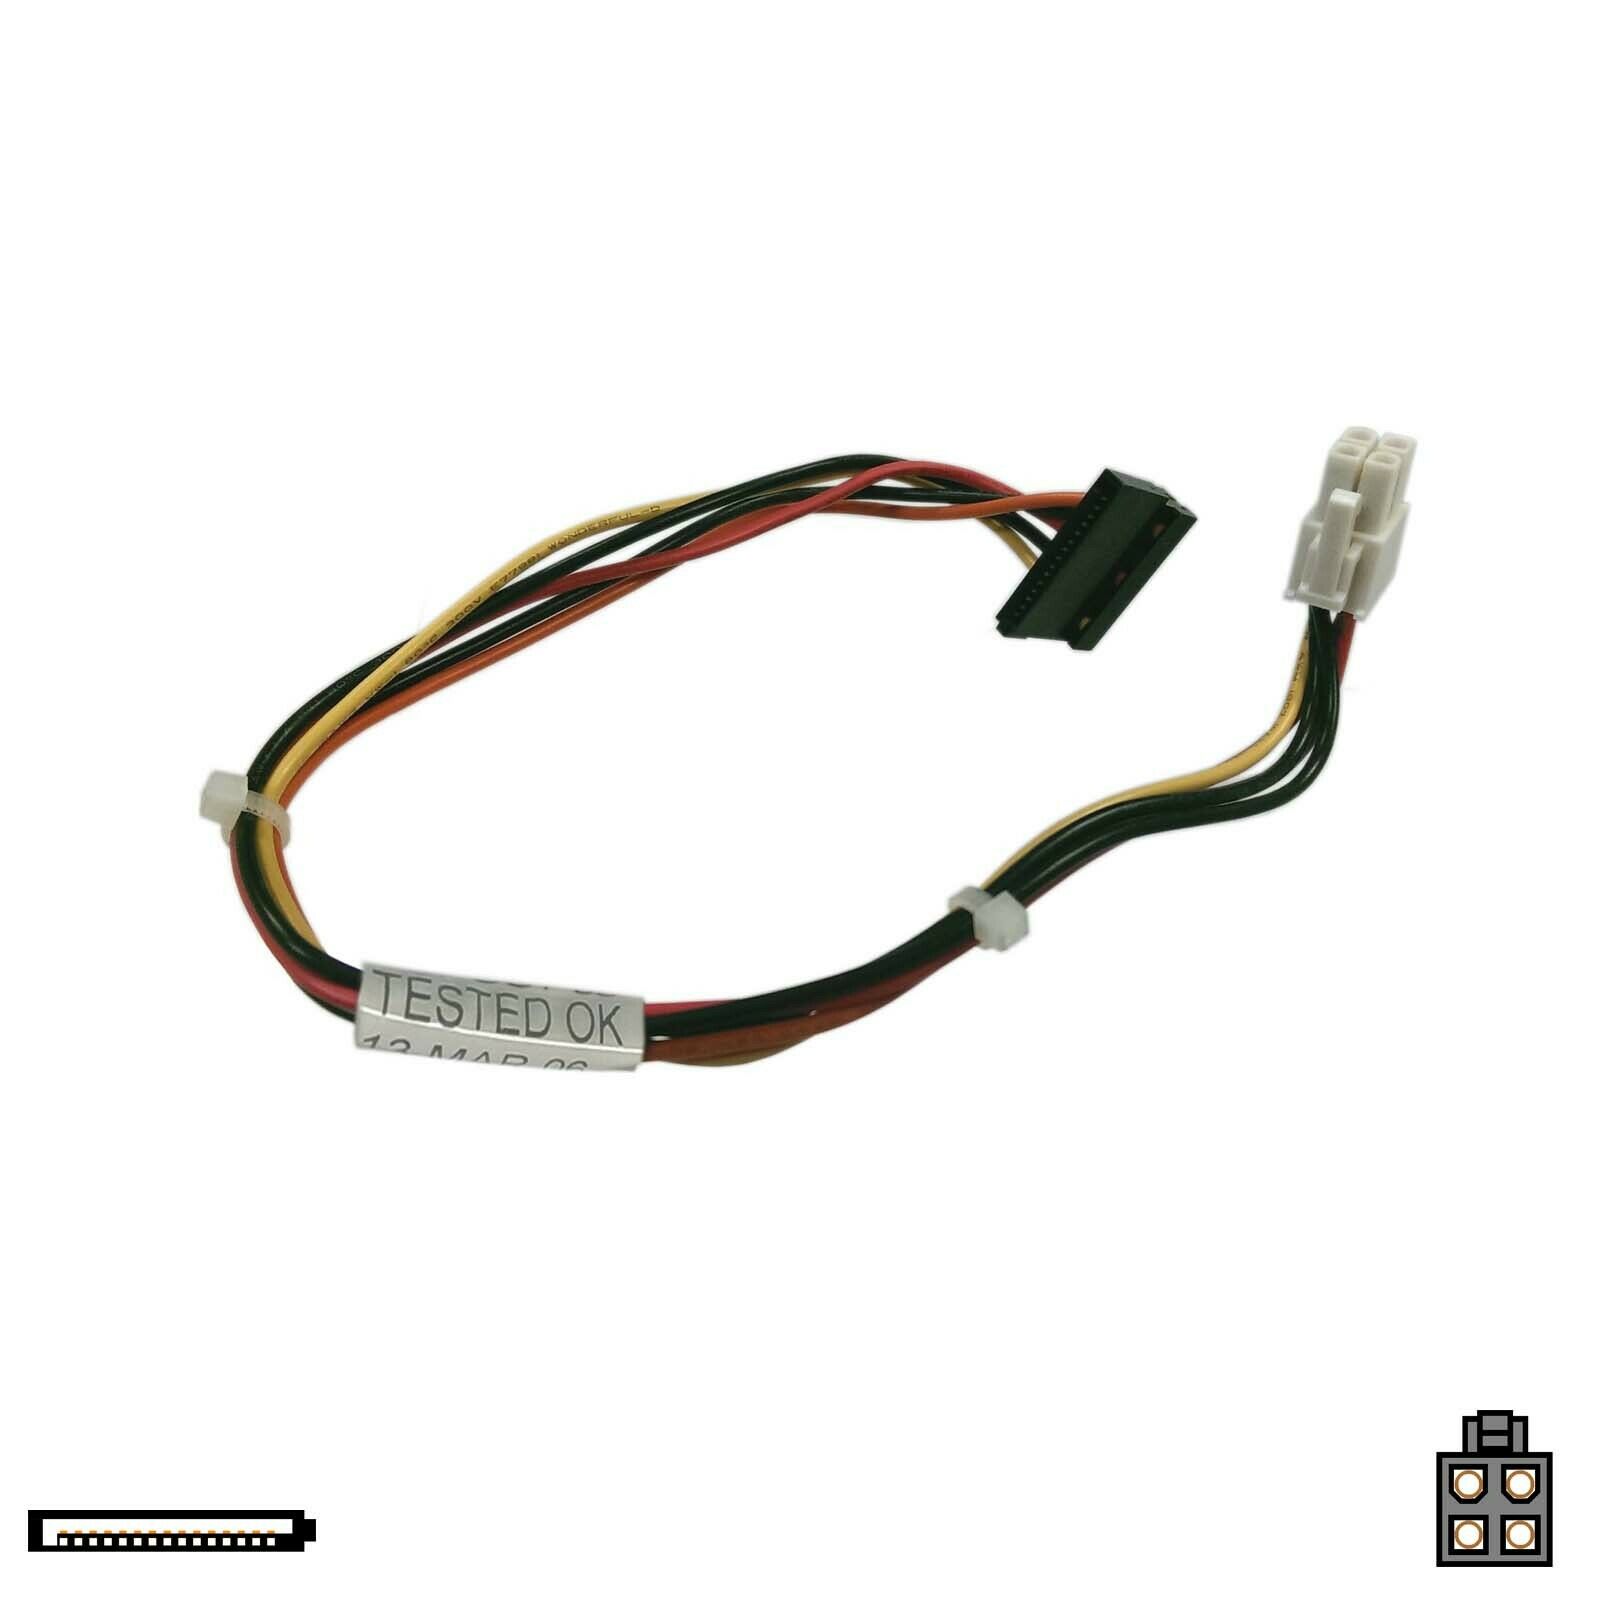 U2837 | Dell SATA Power Cable for Optiplex SX280 GX620